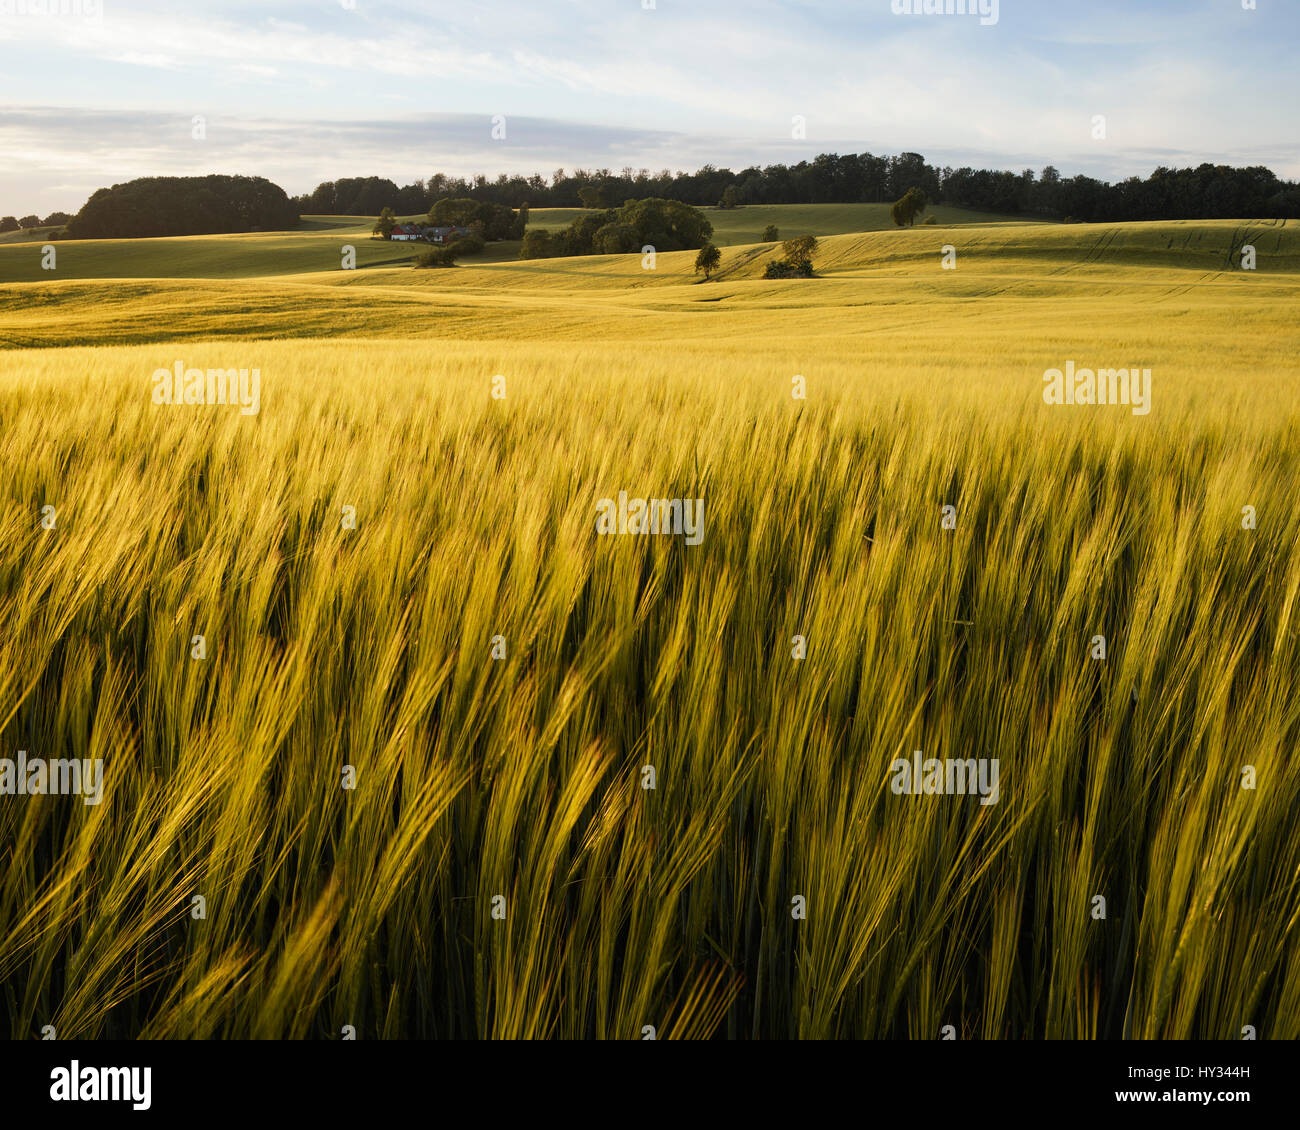 Suecia, Skane, Krageholm, crecimiento de planta cerealera Foto de stock